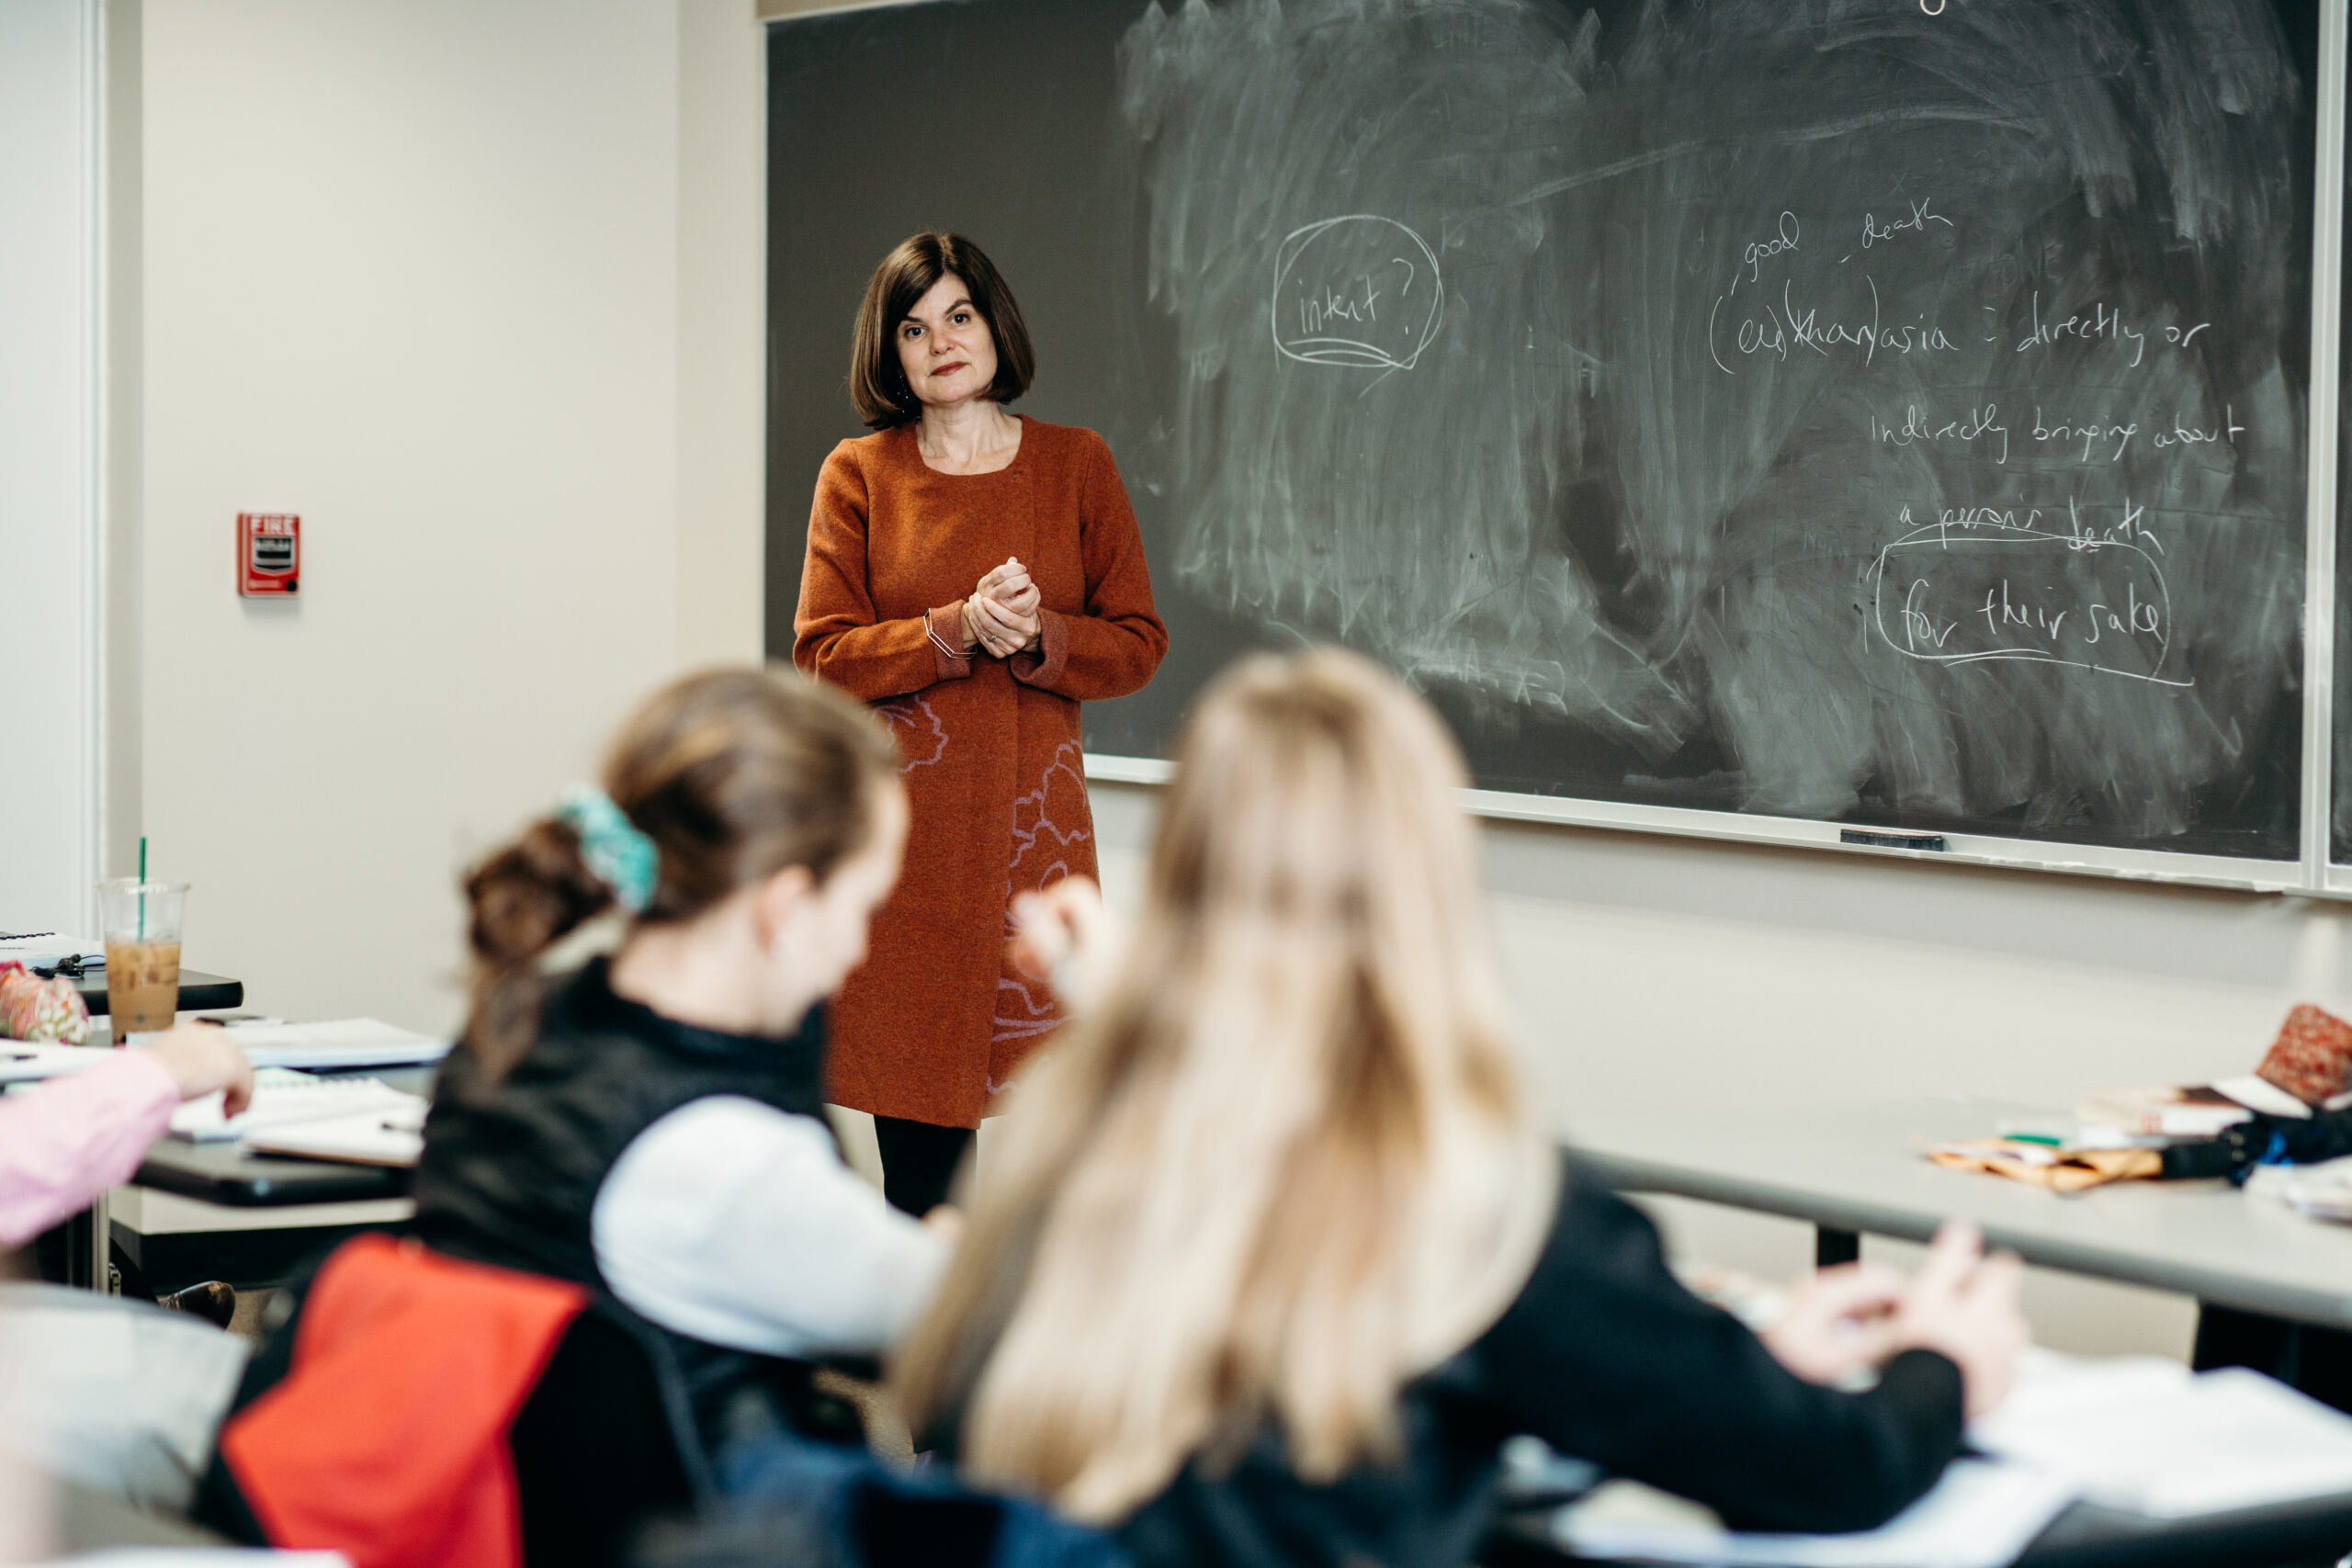 Dr. Angela Licia Carlson, Ph.D teaching a class